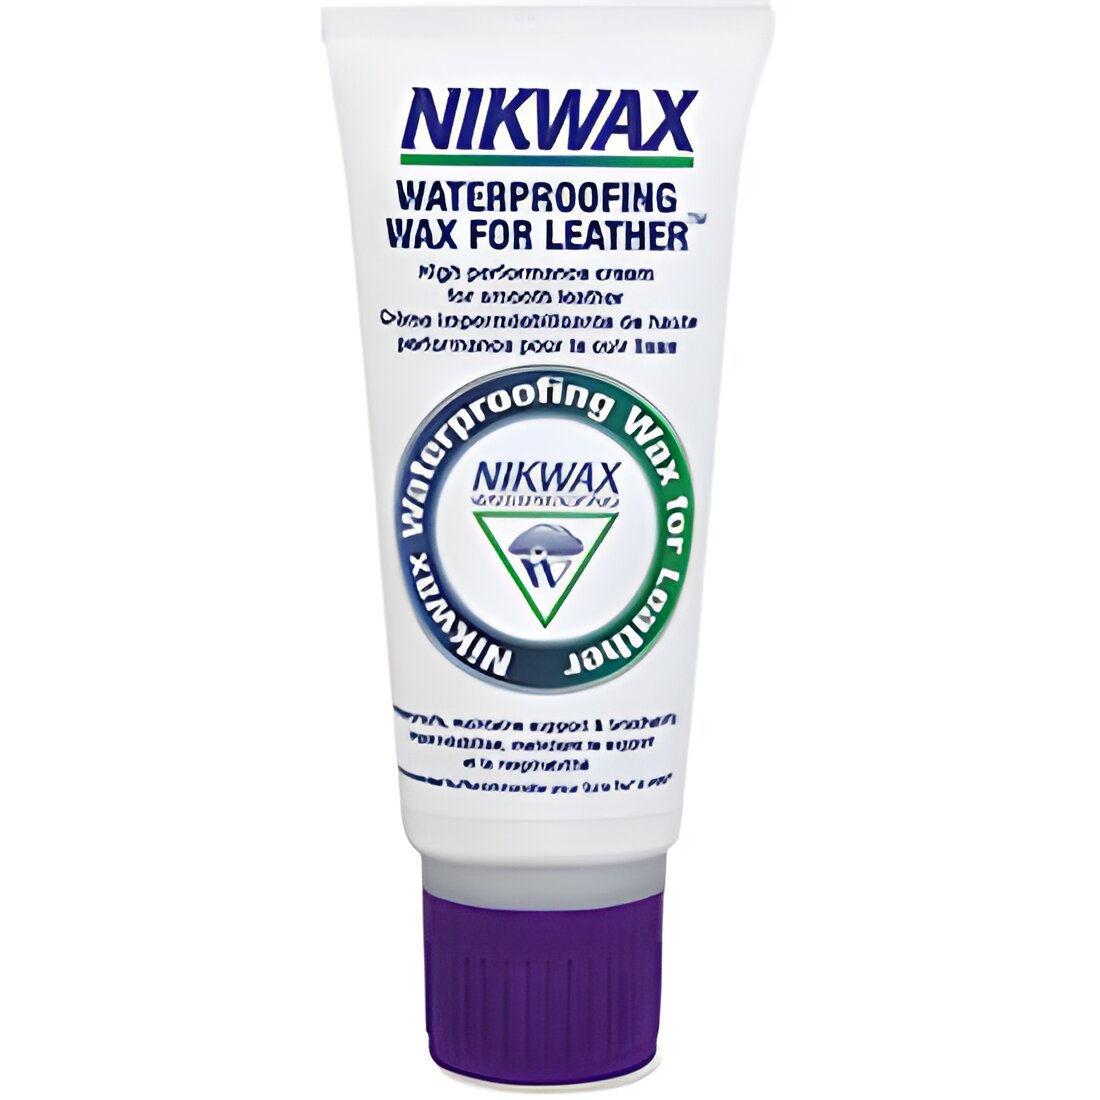 Free Nikwax Waterproofing Samples